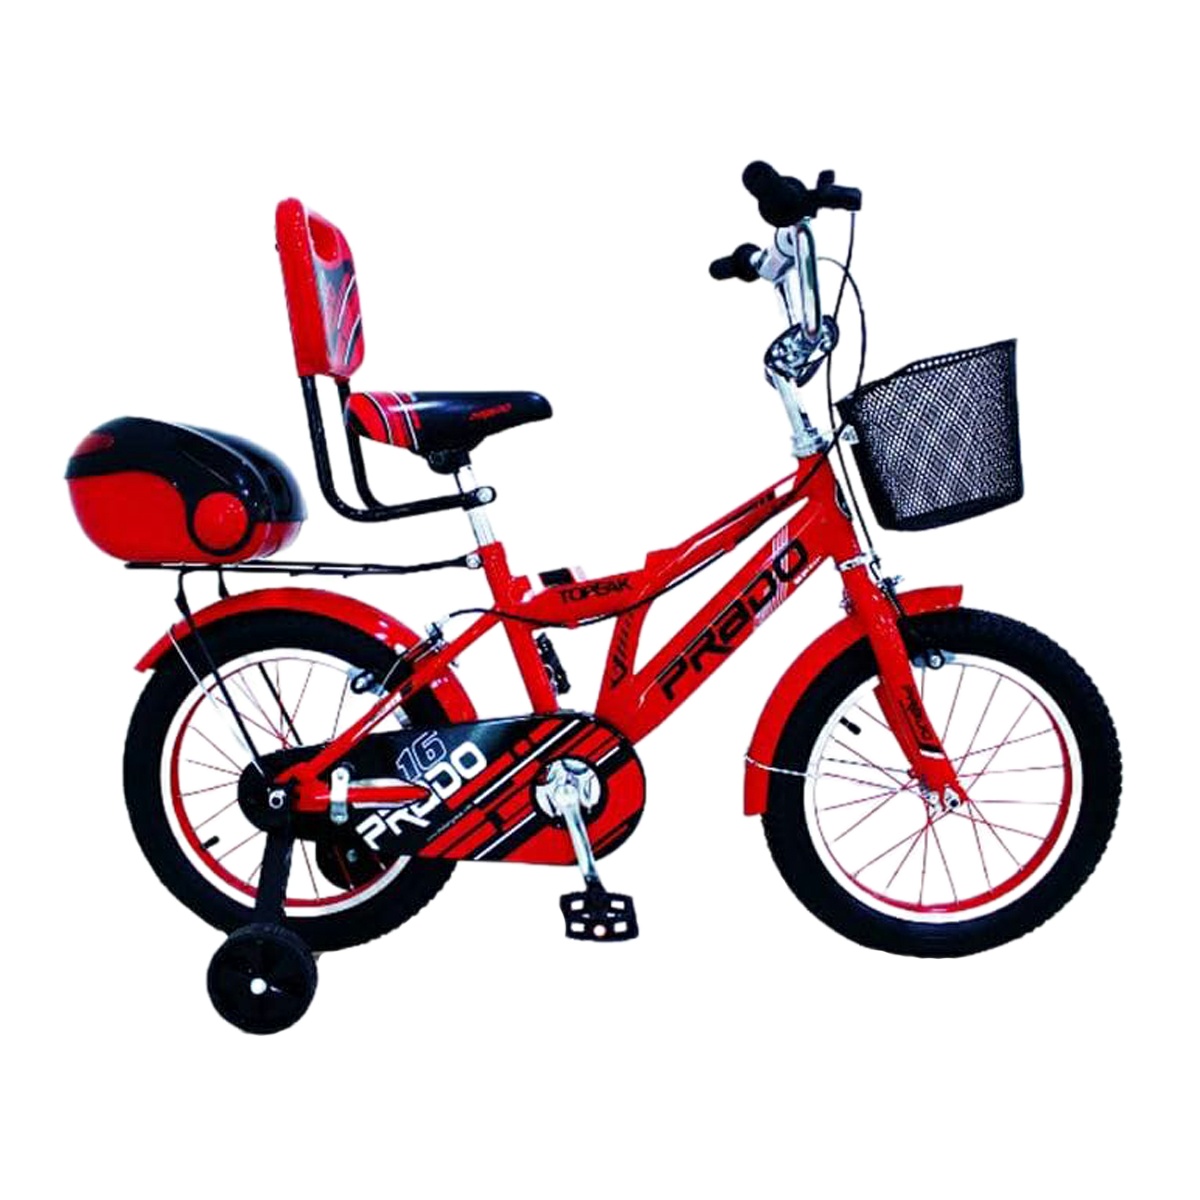 دوچرخه شهری مدل پرادو کد 1600623 سایز 16